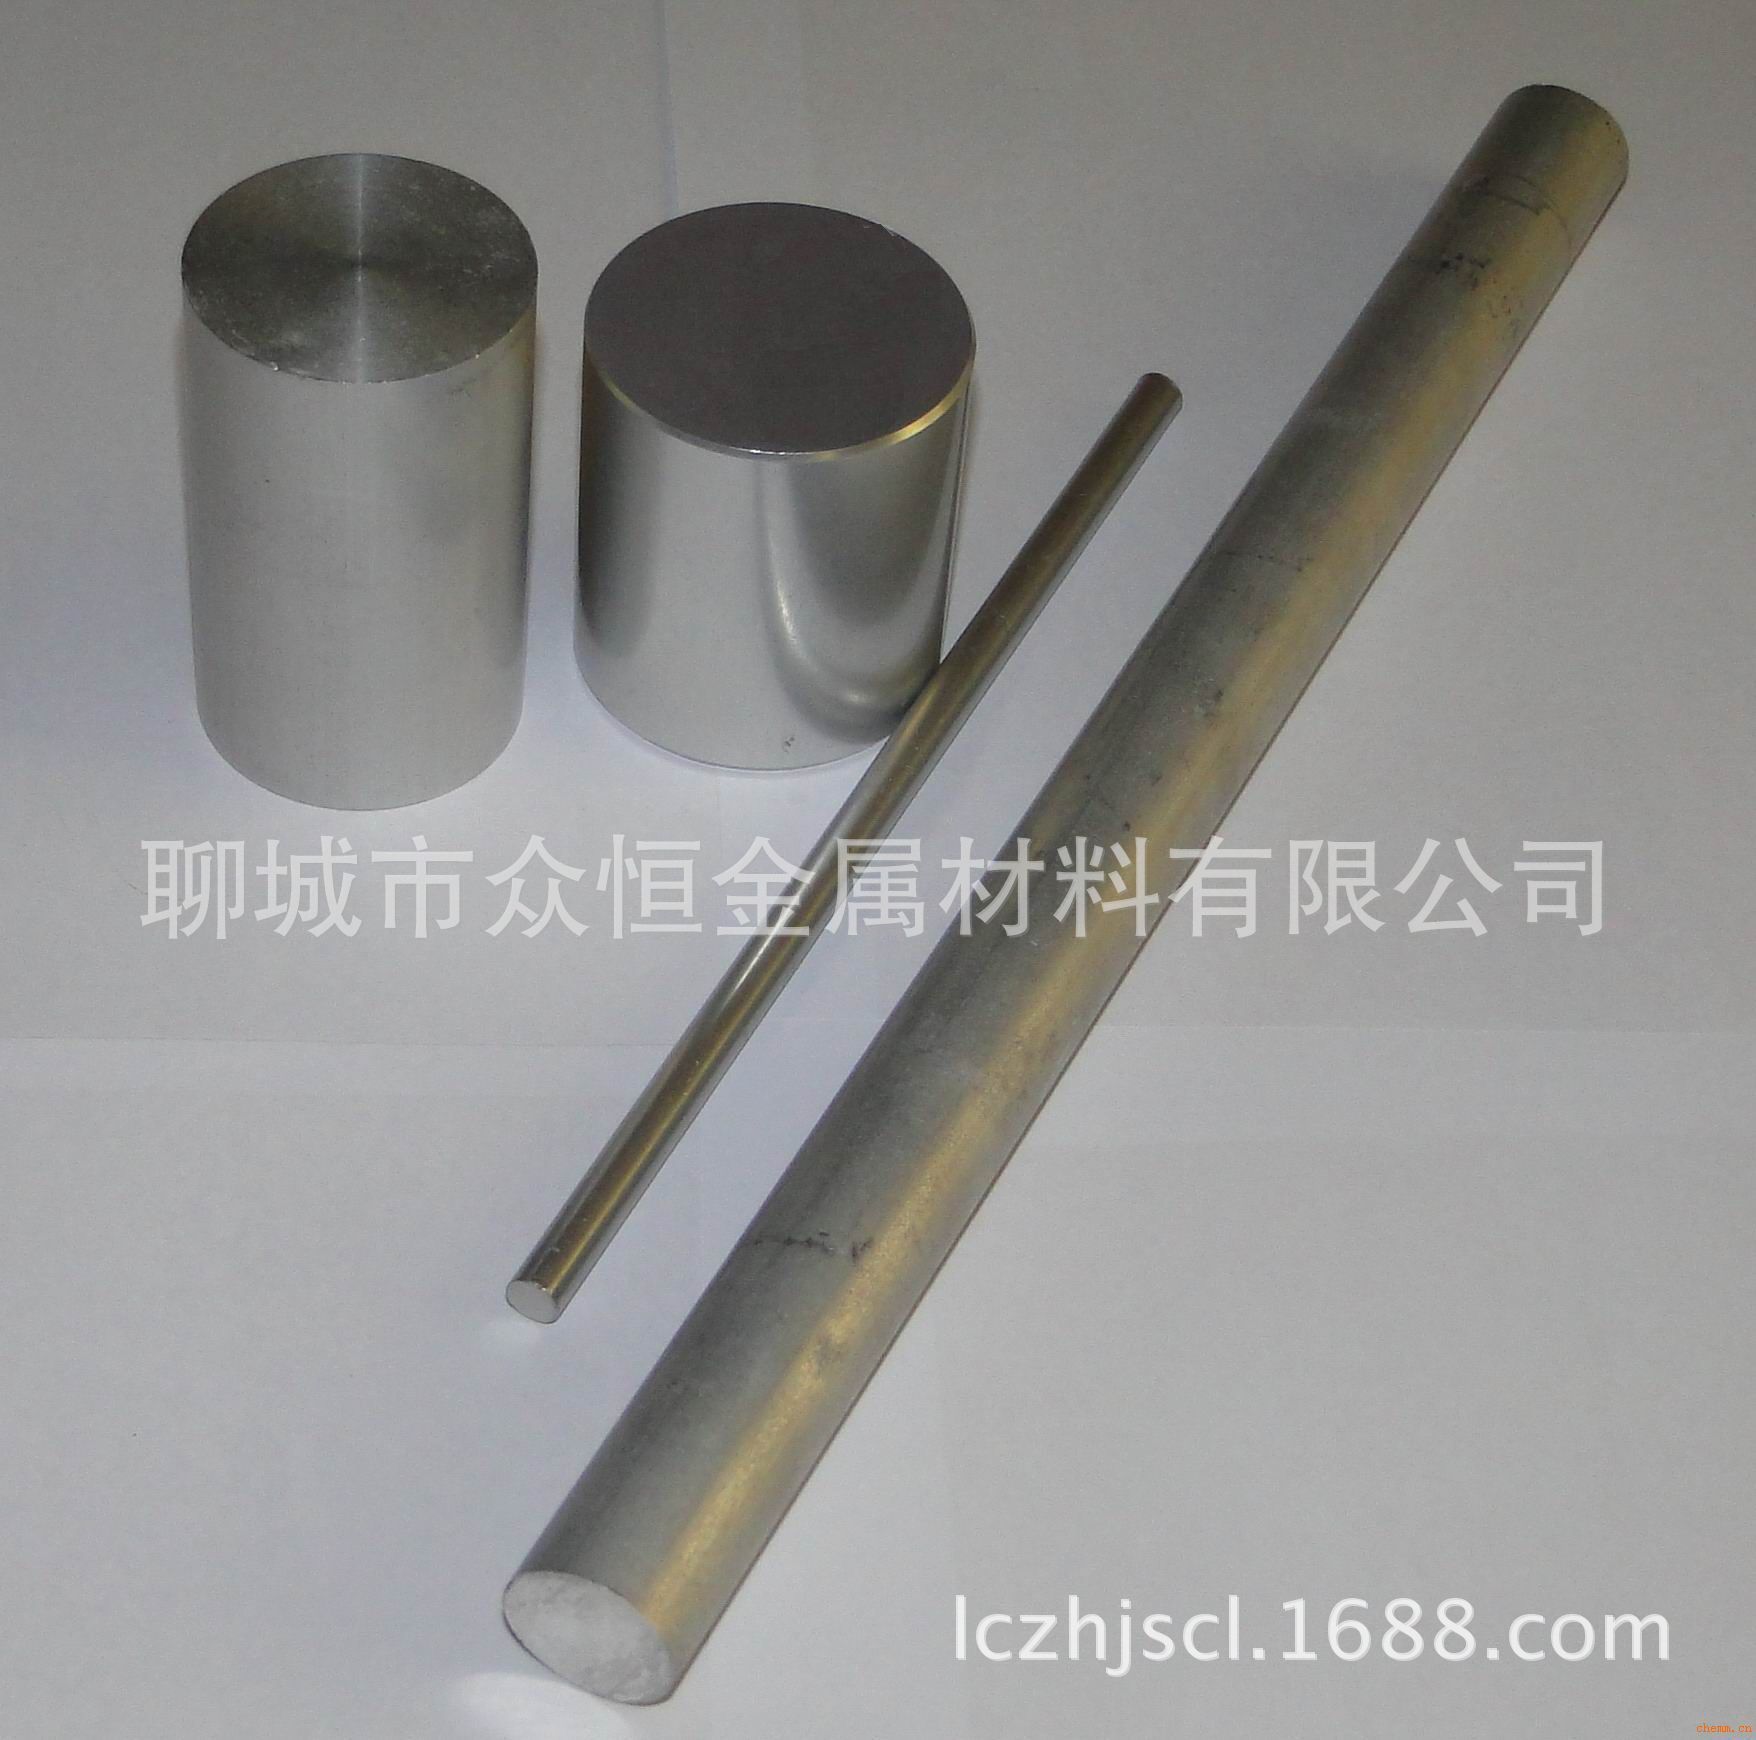 供应5083铝合金 进口7075高硬度铝棒 6061铝镁合金棒 规格齐全示例图6